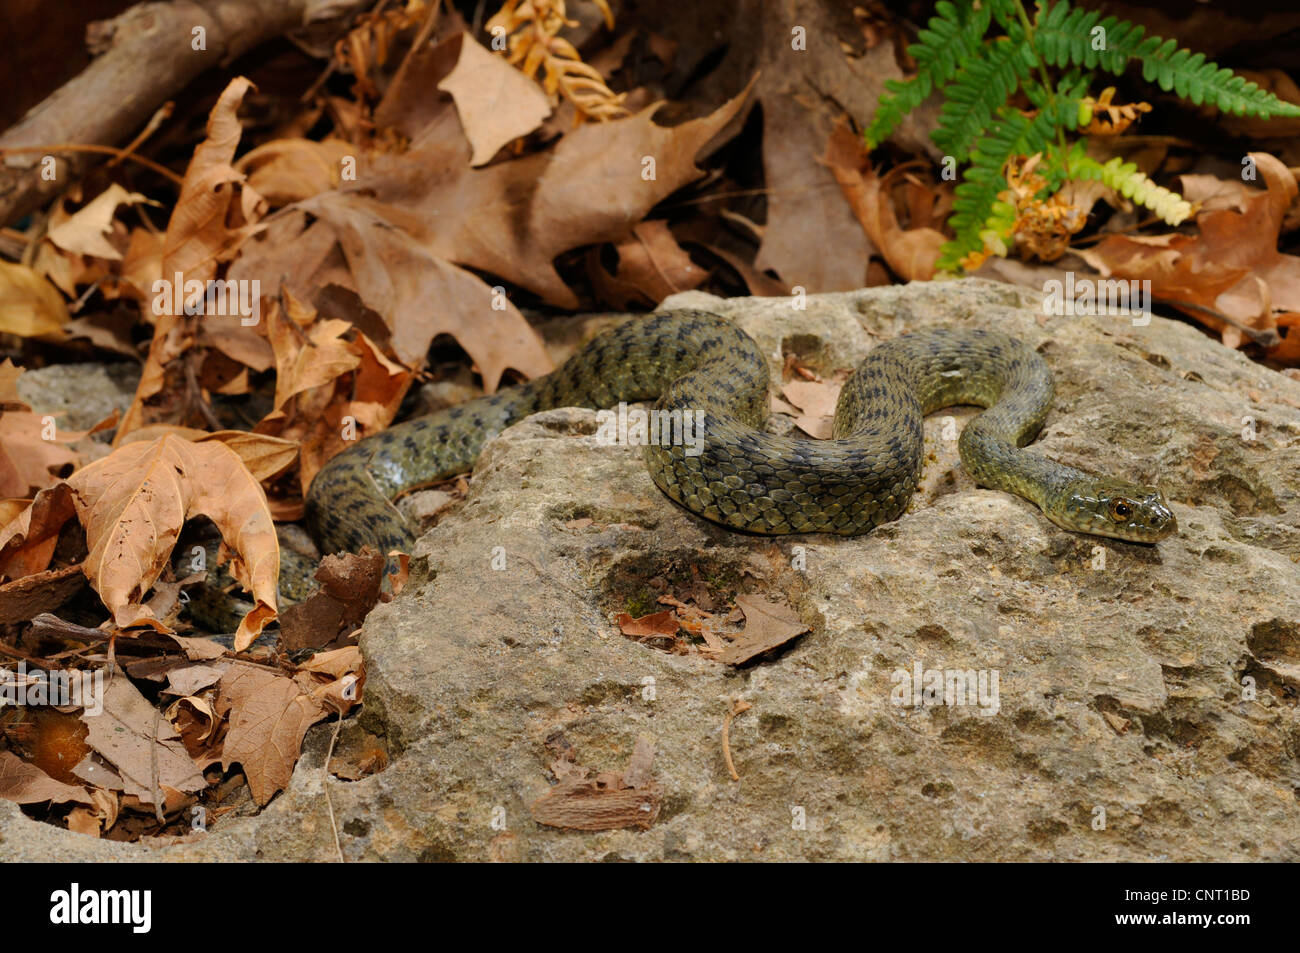 dice snake (Natrix tessellata), on a stone, Greece, Creta, Kournas See Stock Photo